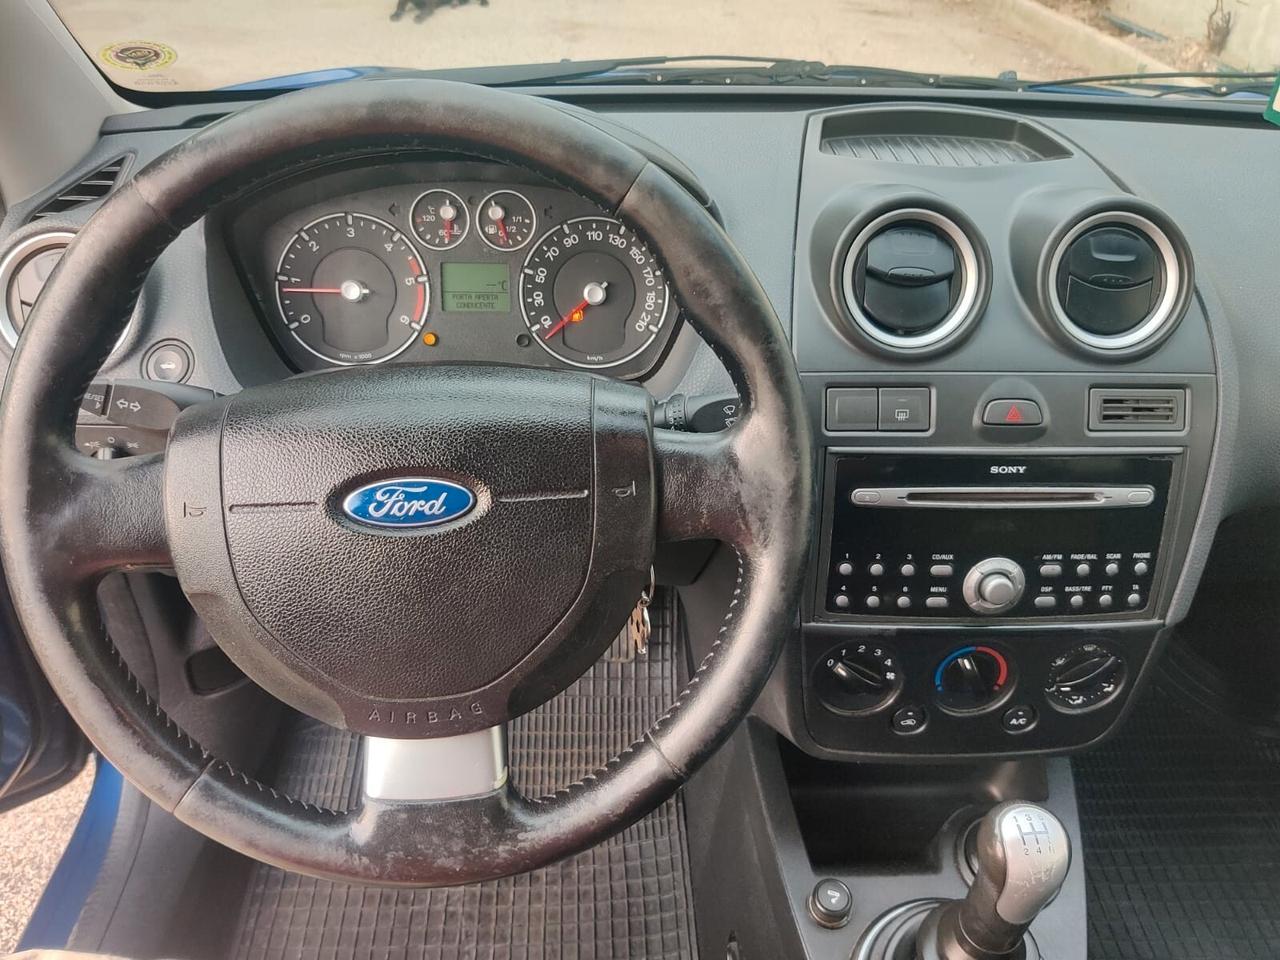 Ford Fiesta 1.4 TDCi 5p. Titanium